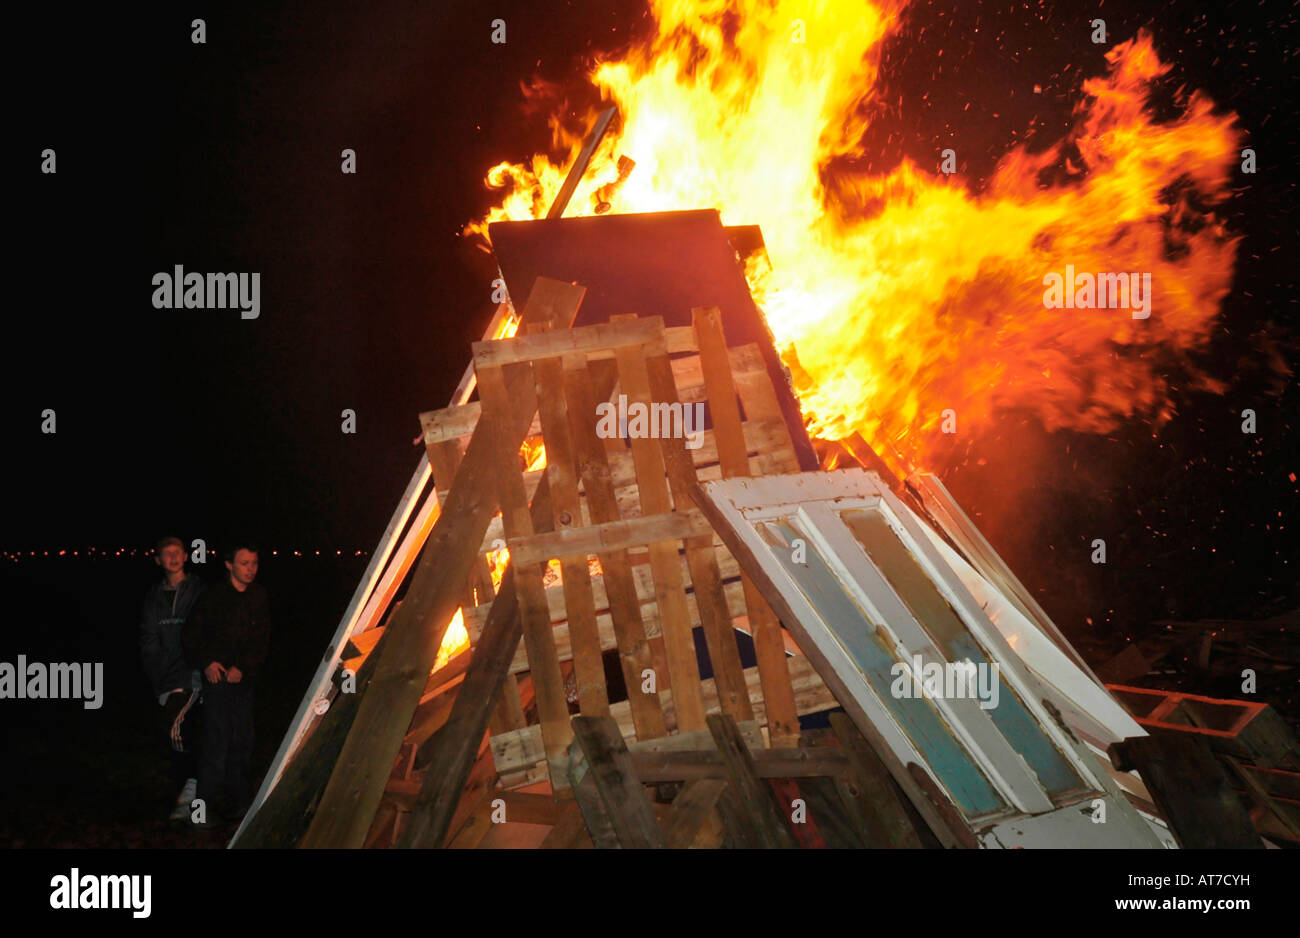 Zwei Kinder zusehen, wie ein großes Lagerfeuer entzündet sich in Flammen Stockfoto